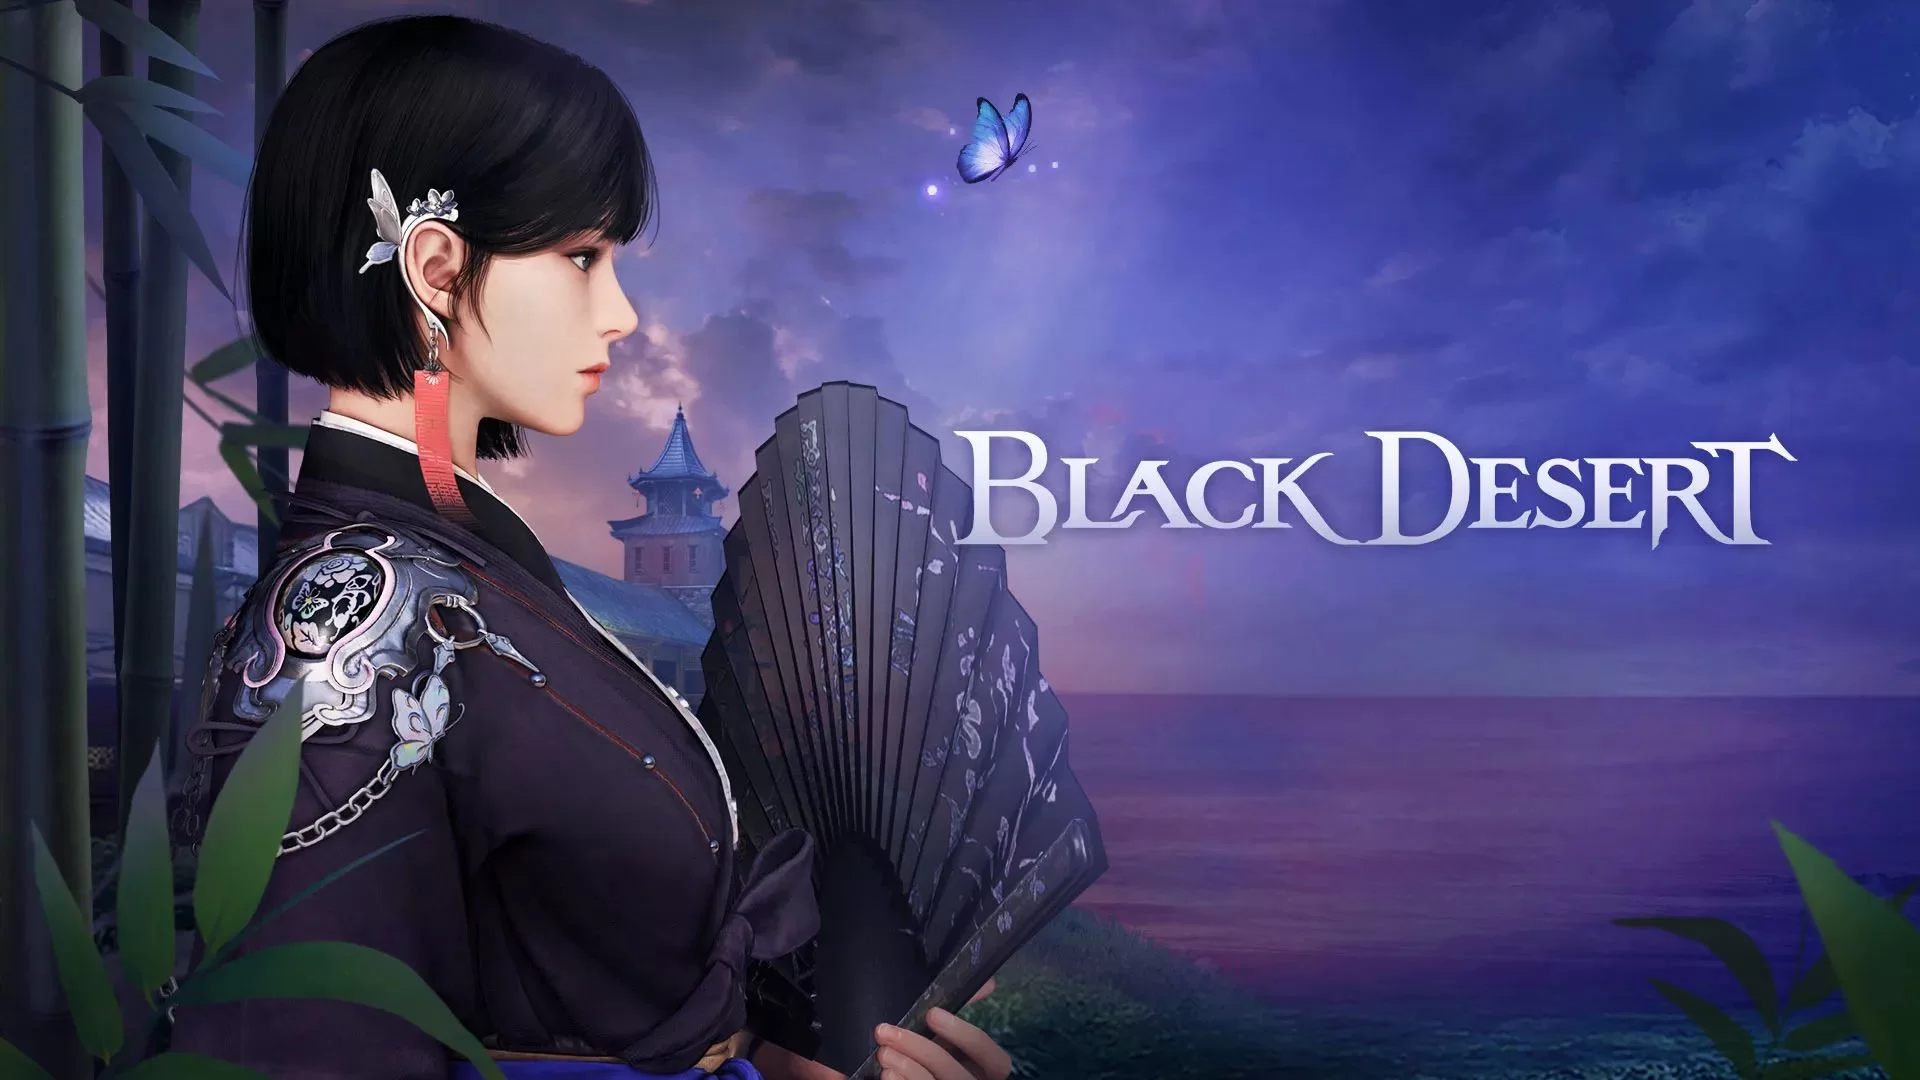 Grab Black Desert Online for Free on Steam